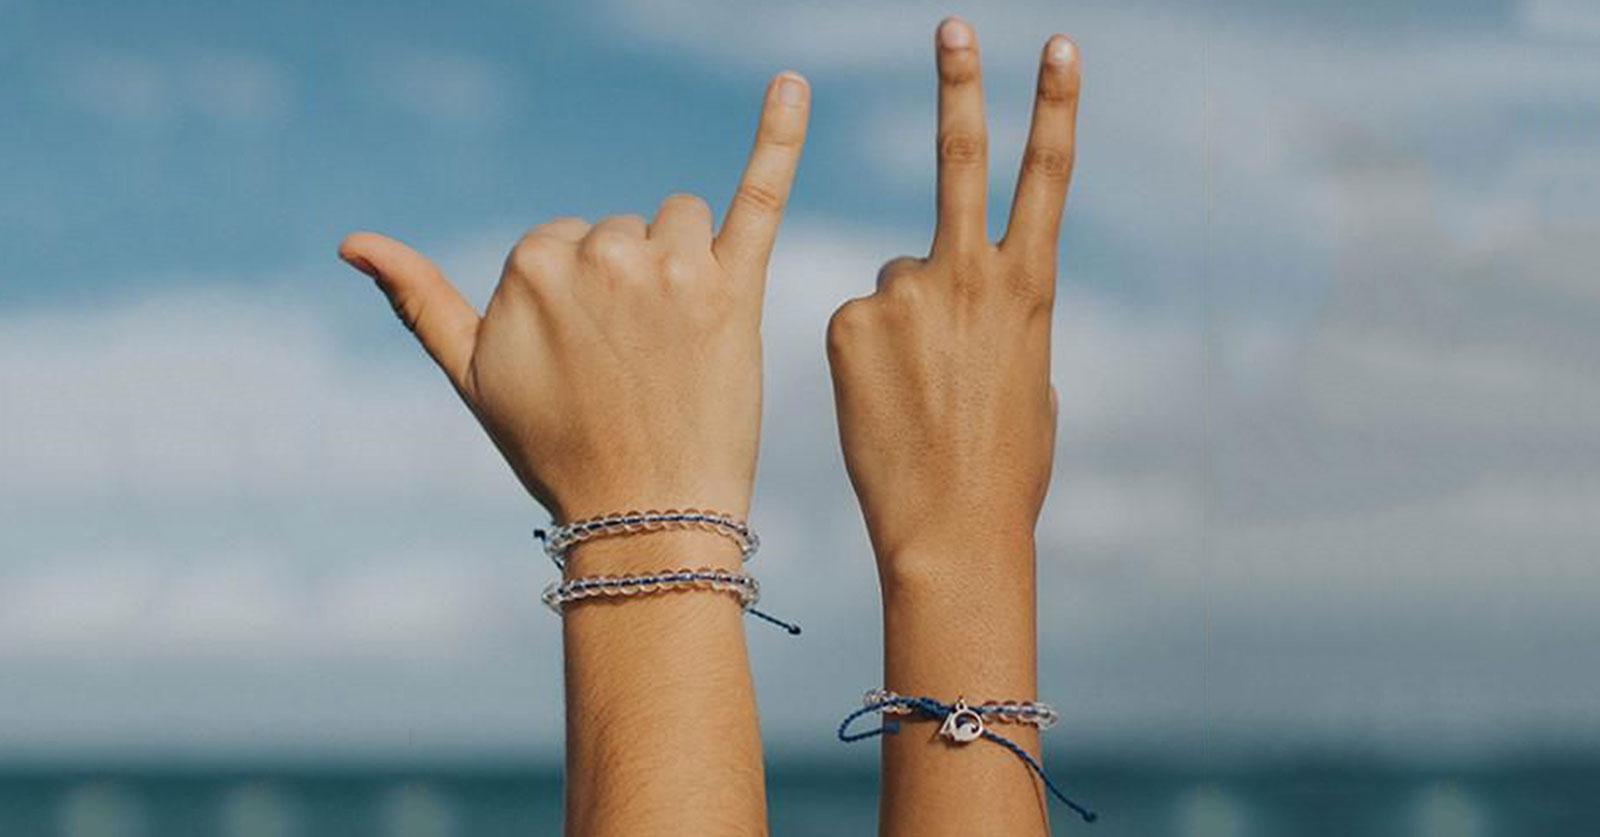 Share more than 80 bracelet plastic ocean best - in.duhocakina